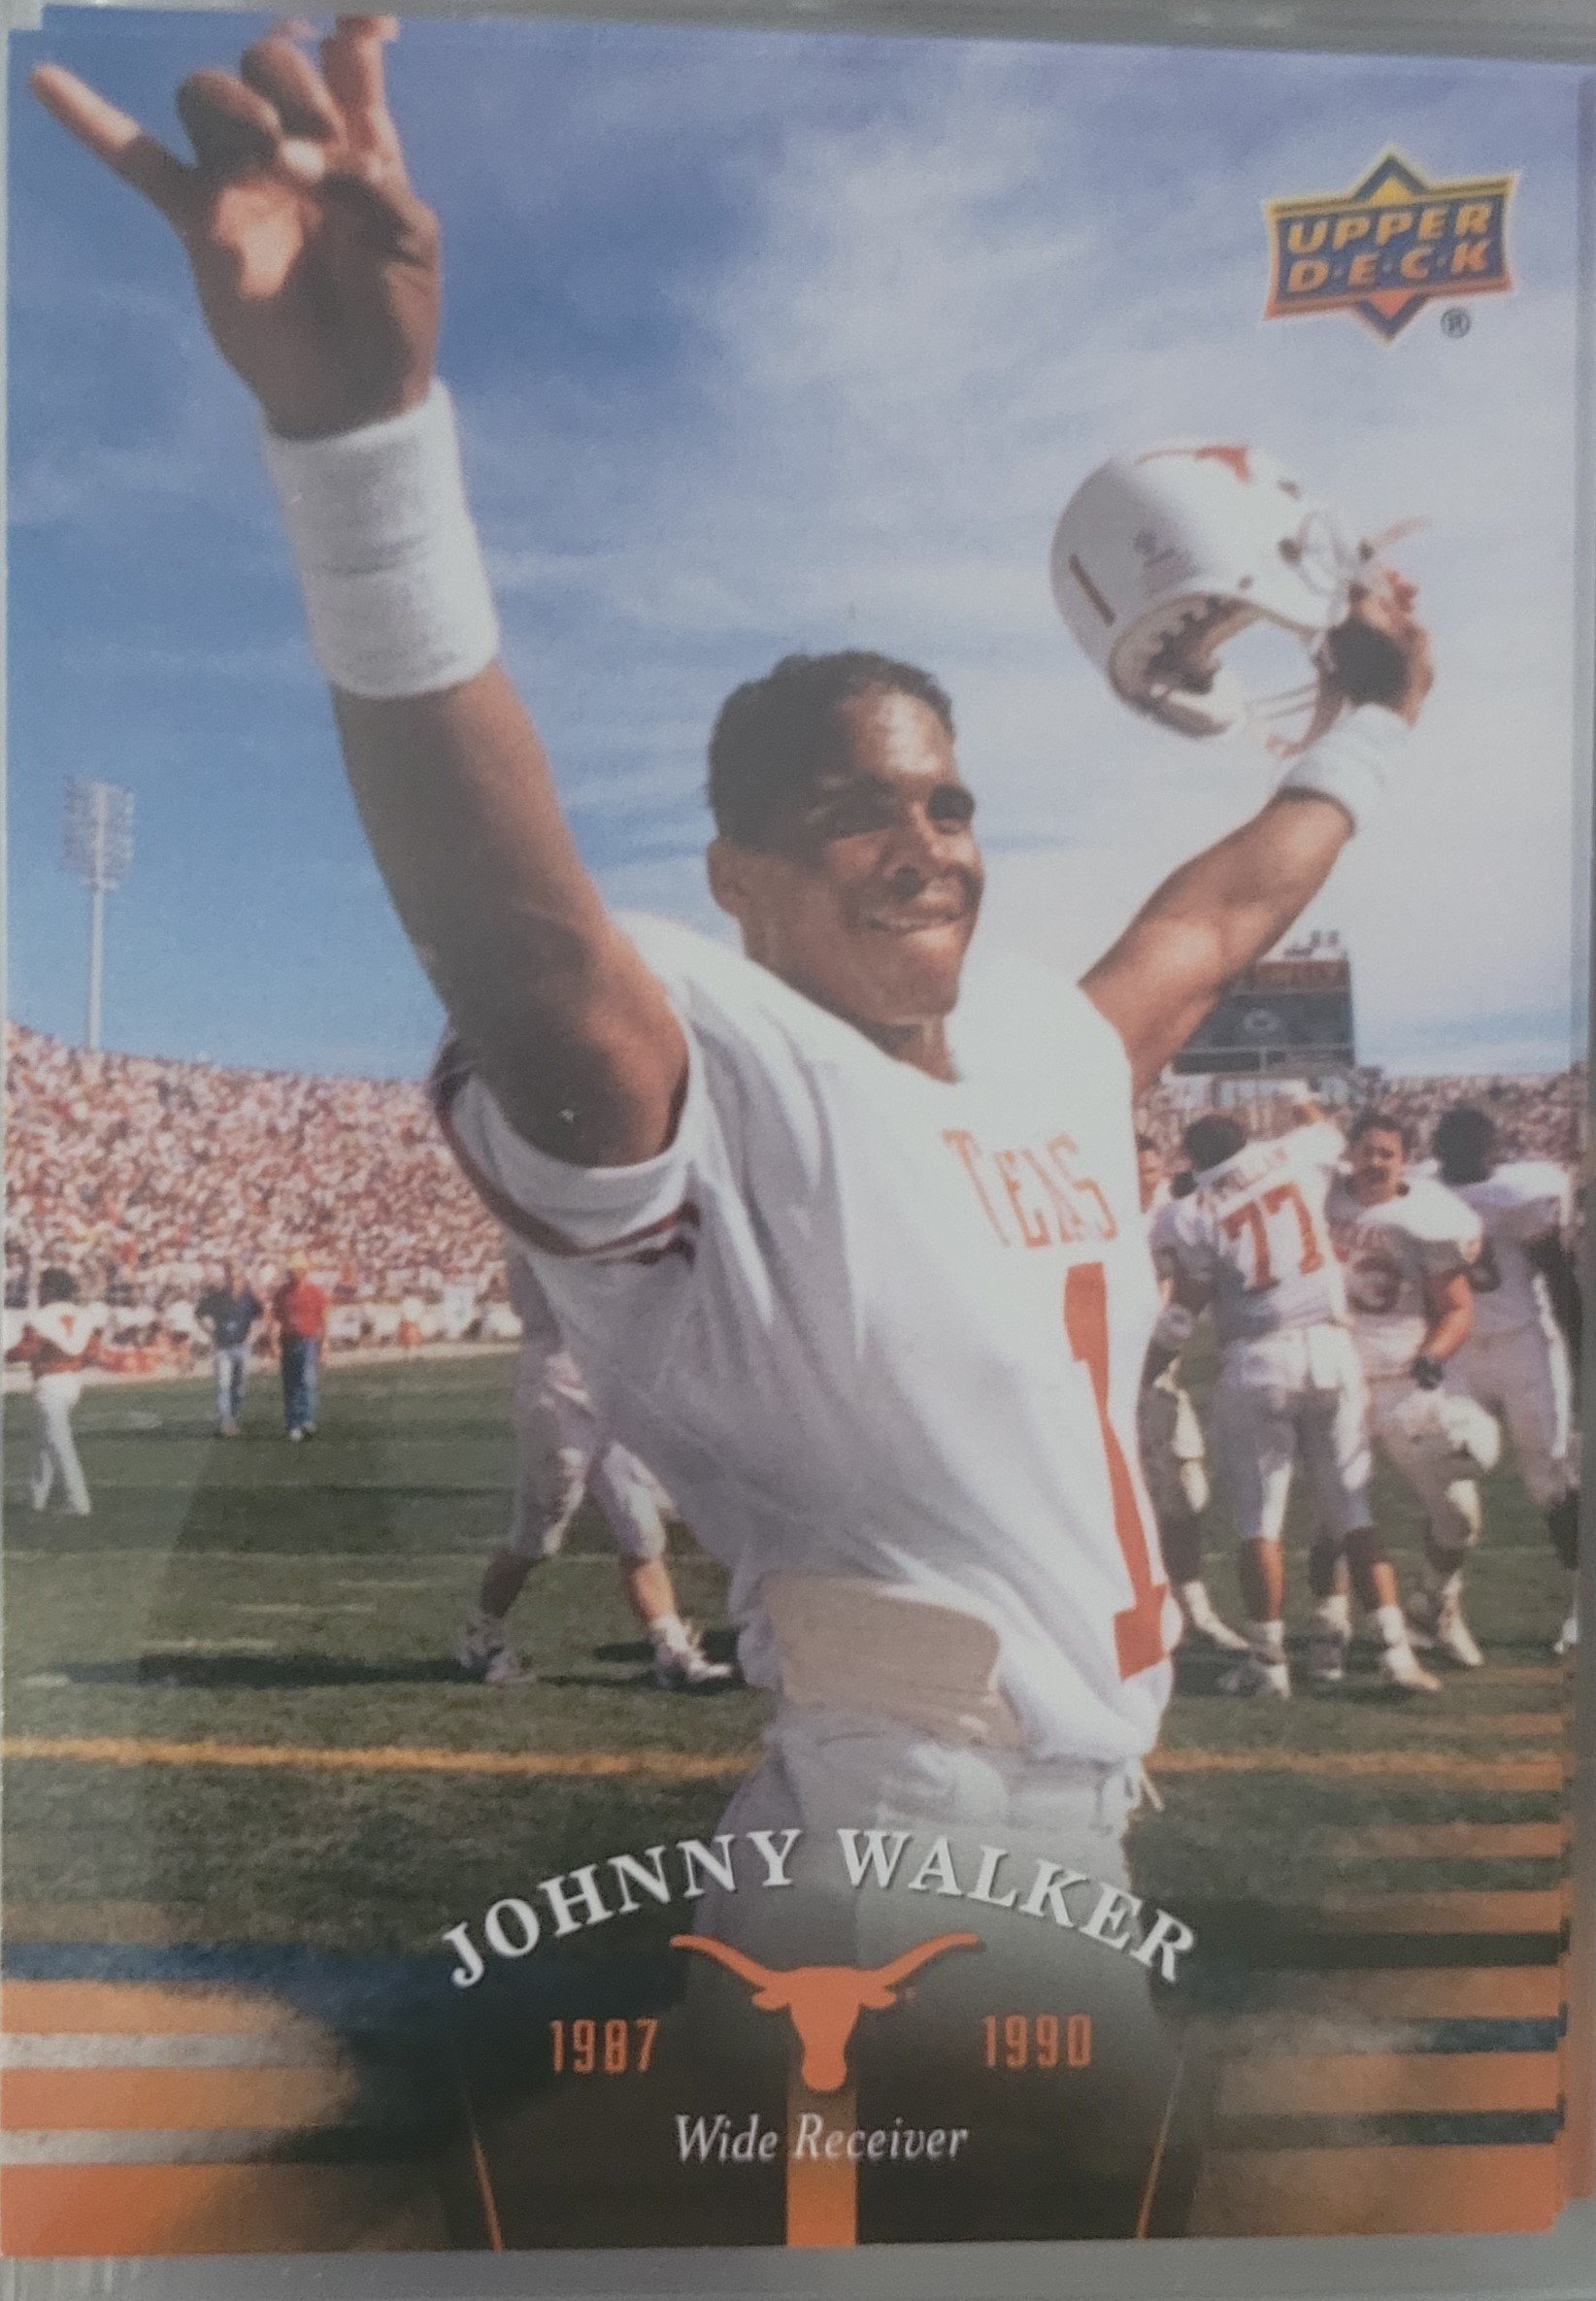 1989 Johnny Walker